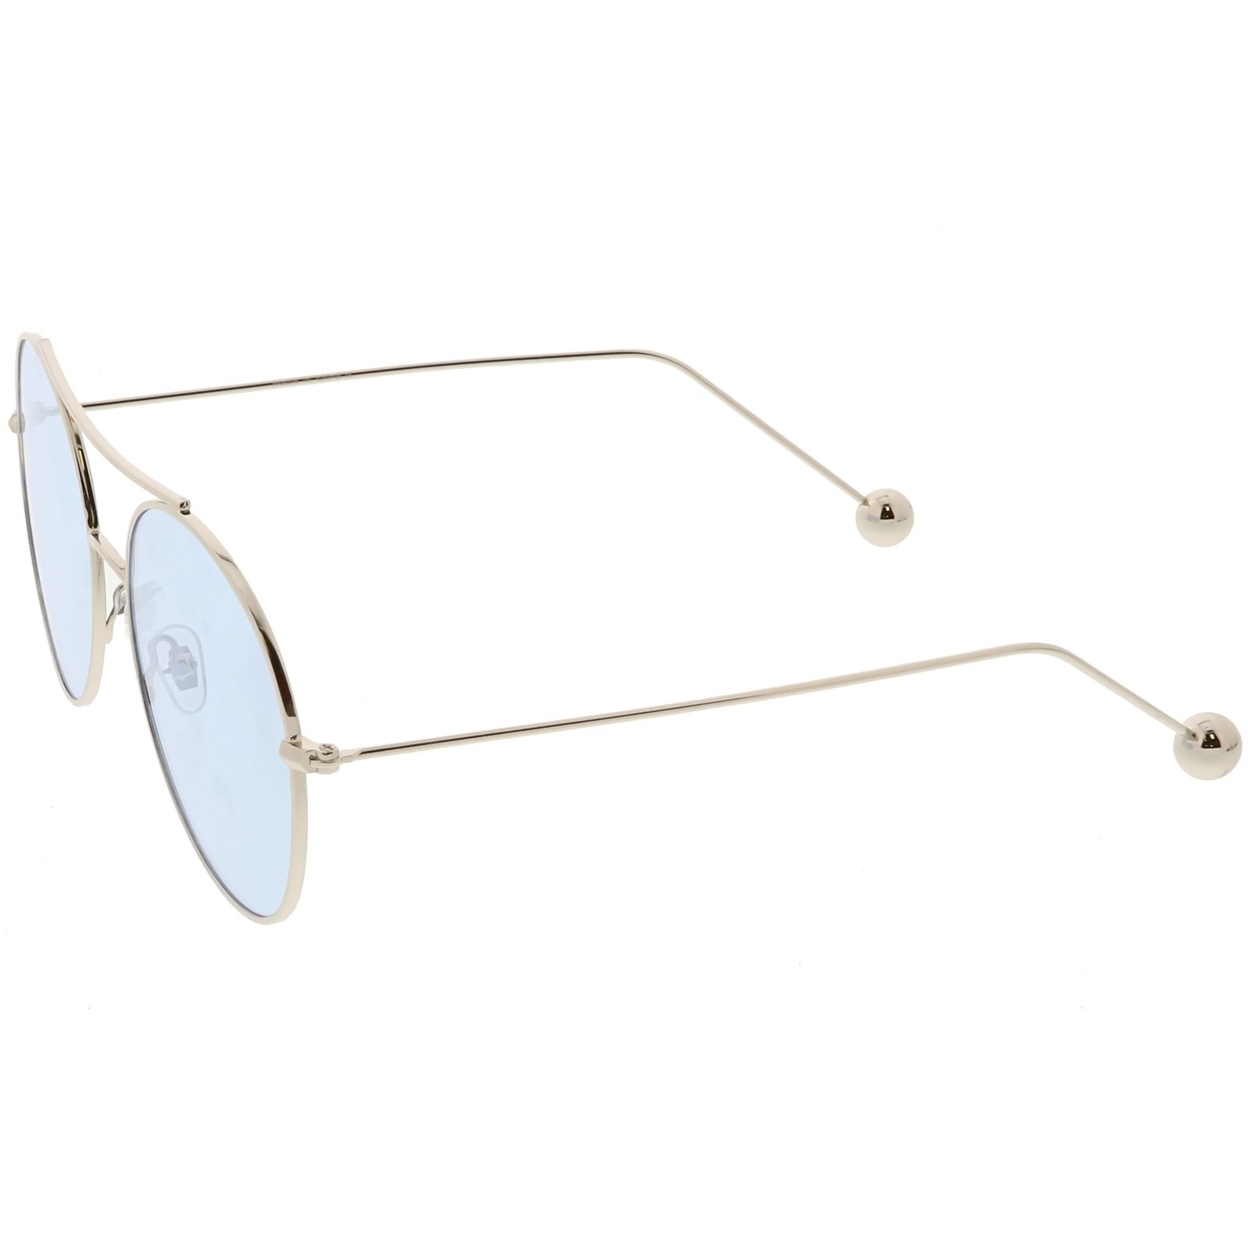 Premium Oversize Round Sunglasses Metal Double Nose Bridge Color Flat Lens 59mm - Silver / Blue